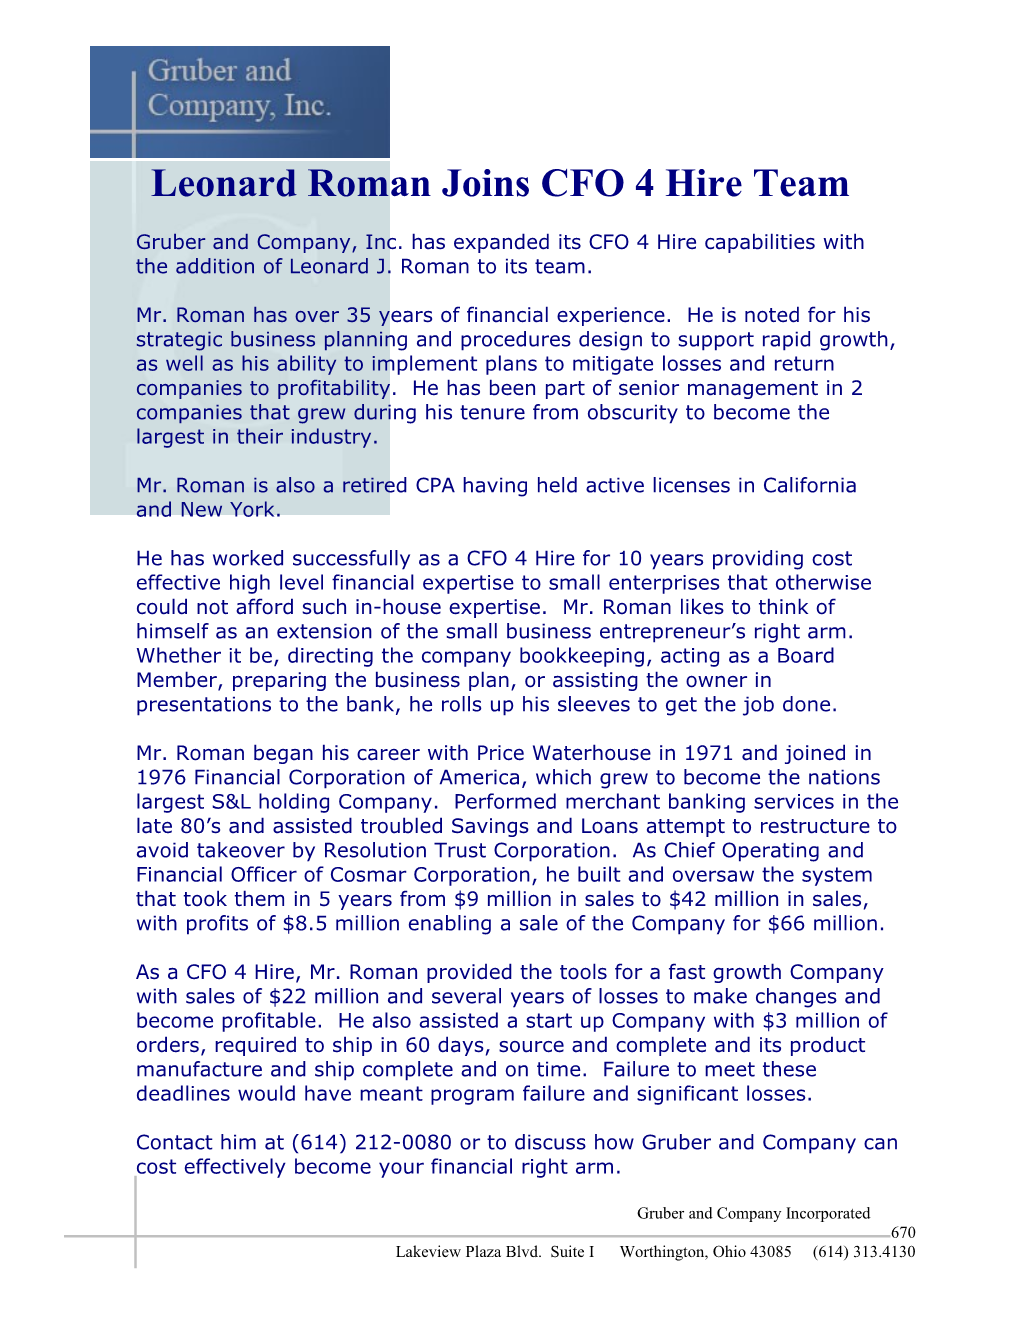 Leonard Roman Joins CFO 4 Hire Team